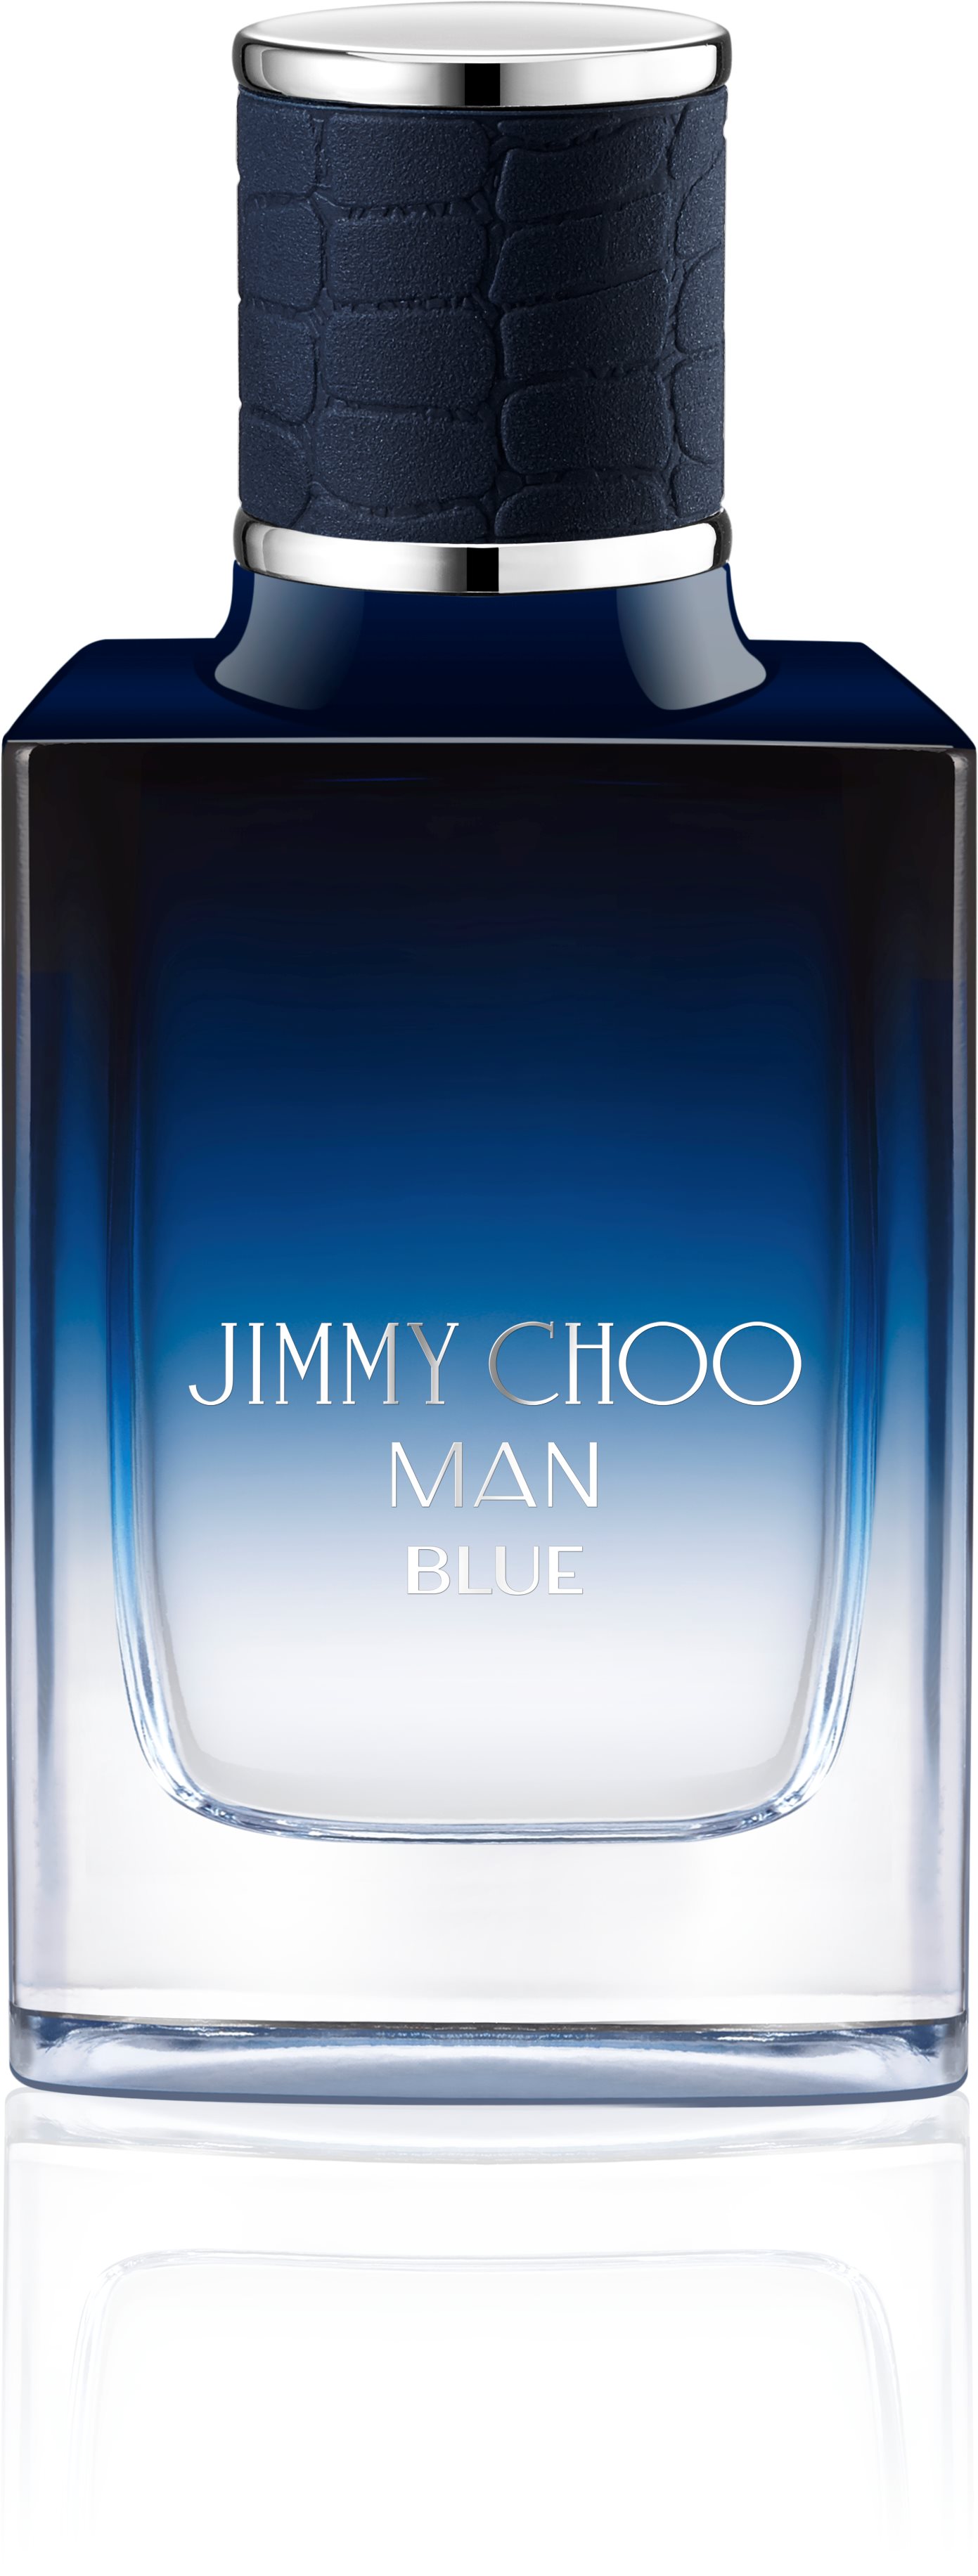 Jimmy Choo Blue Eau Toilette 30 ml.